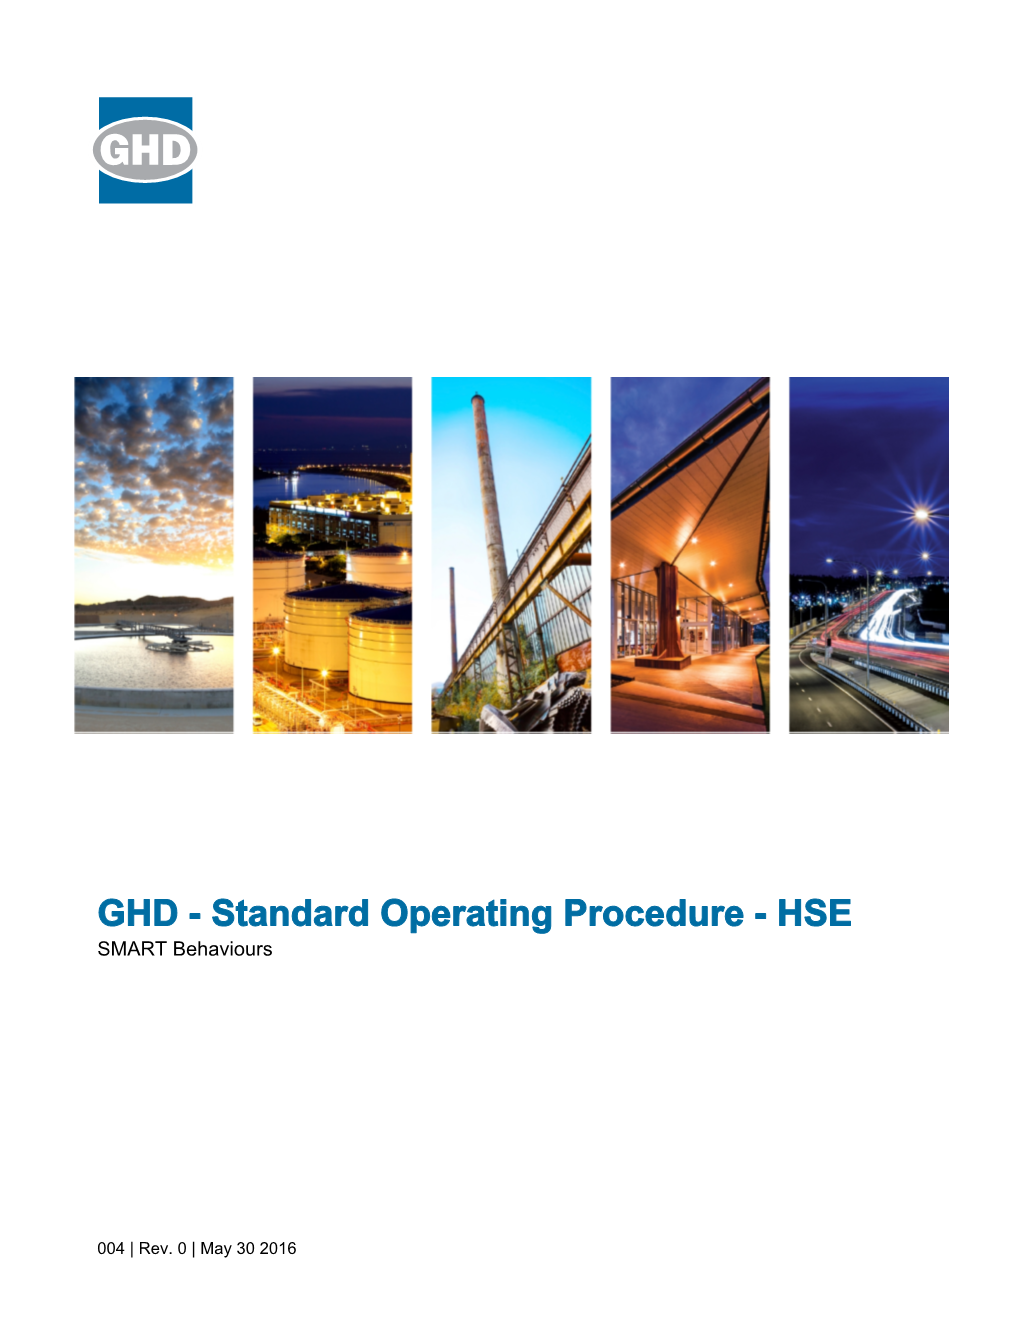 Standard Operating Procedure - HSE SMART Behaviours